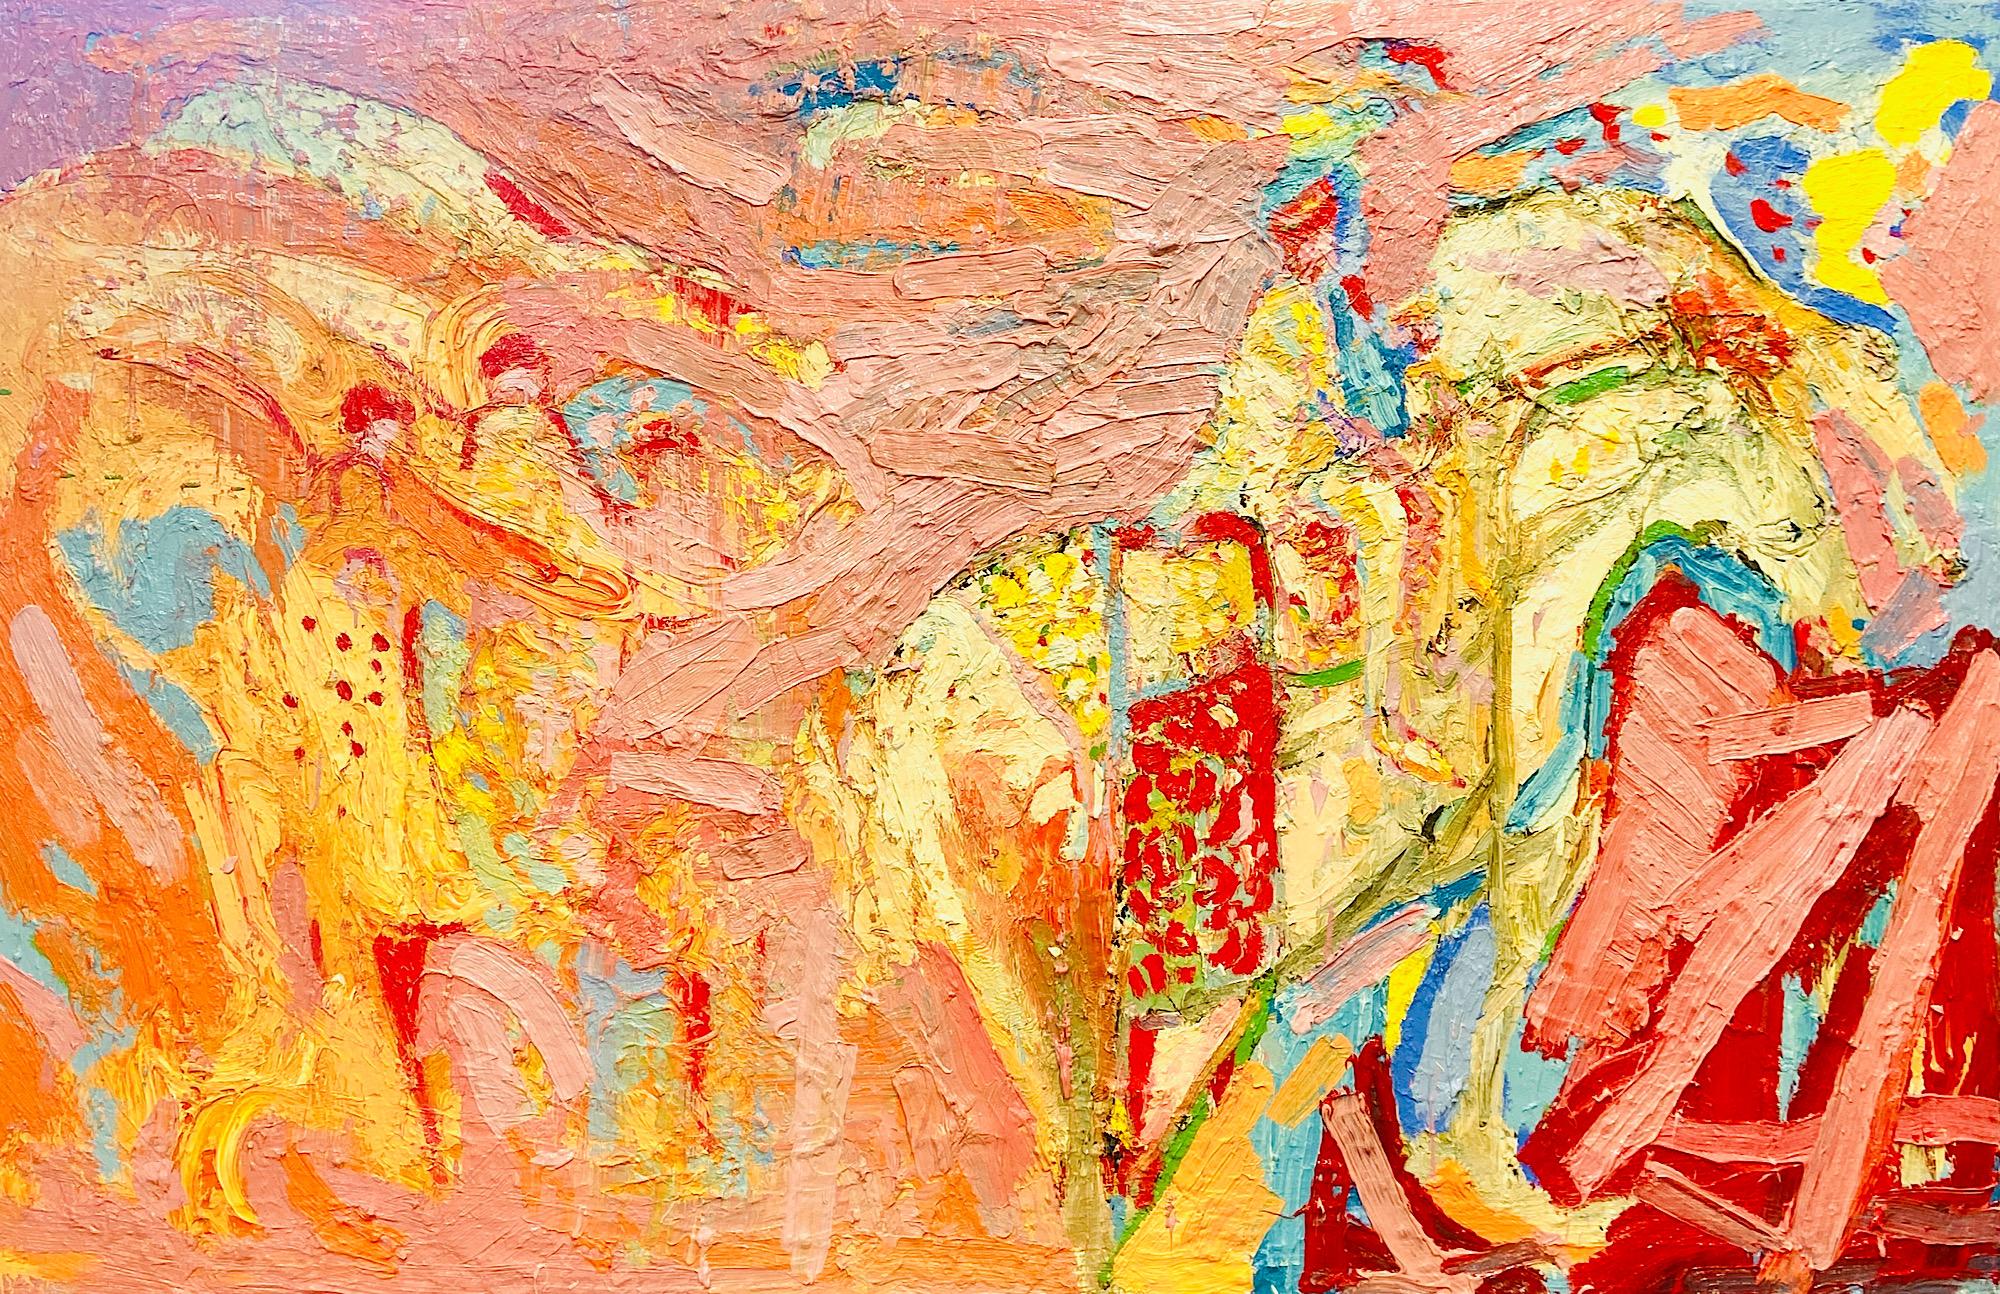 Paul wadsworth Figurative Painting – Hochzeitspferd aus Rajasthan. Großes abstrakt-expressionistisches Ölgemälde